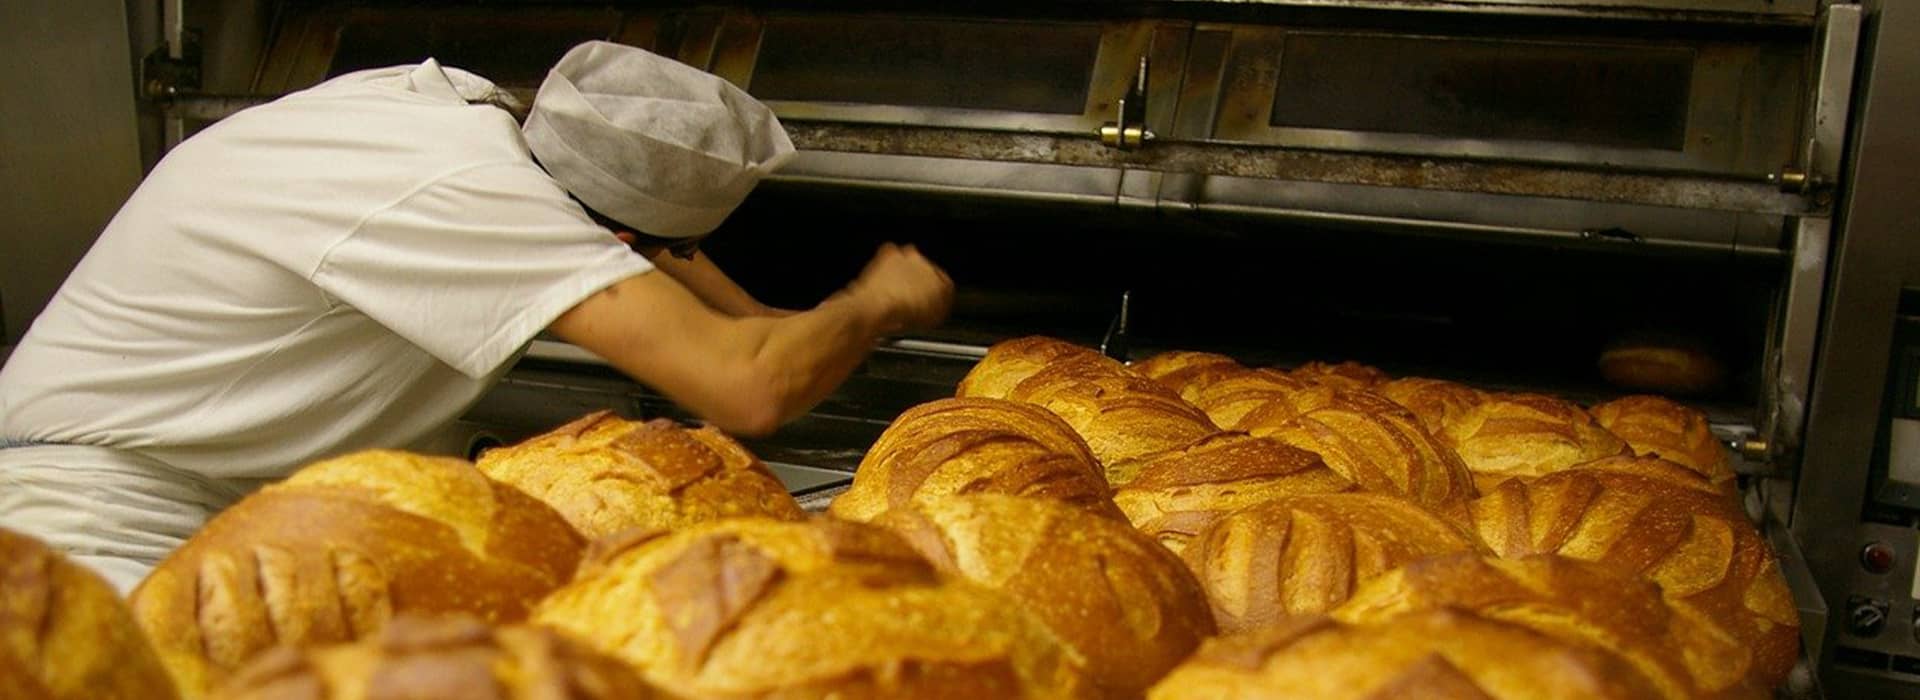 Sector Industrial de panadería